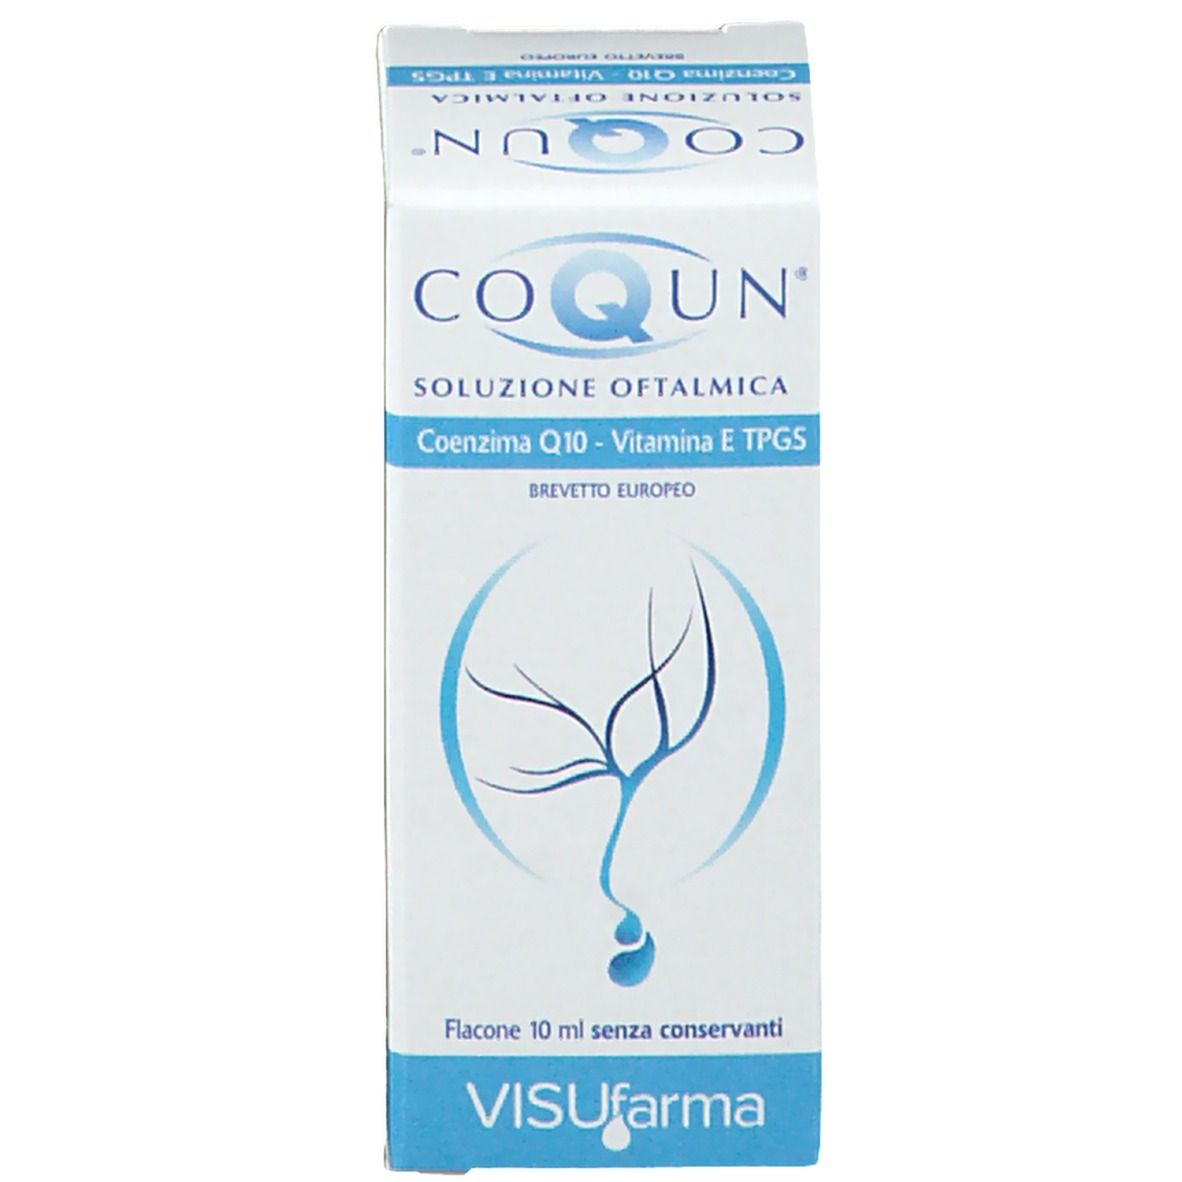 Coqun® Soluzione Oftalmica